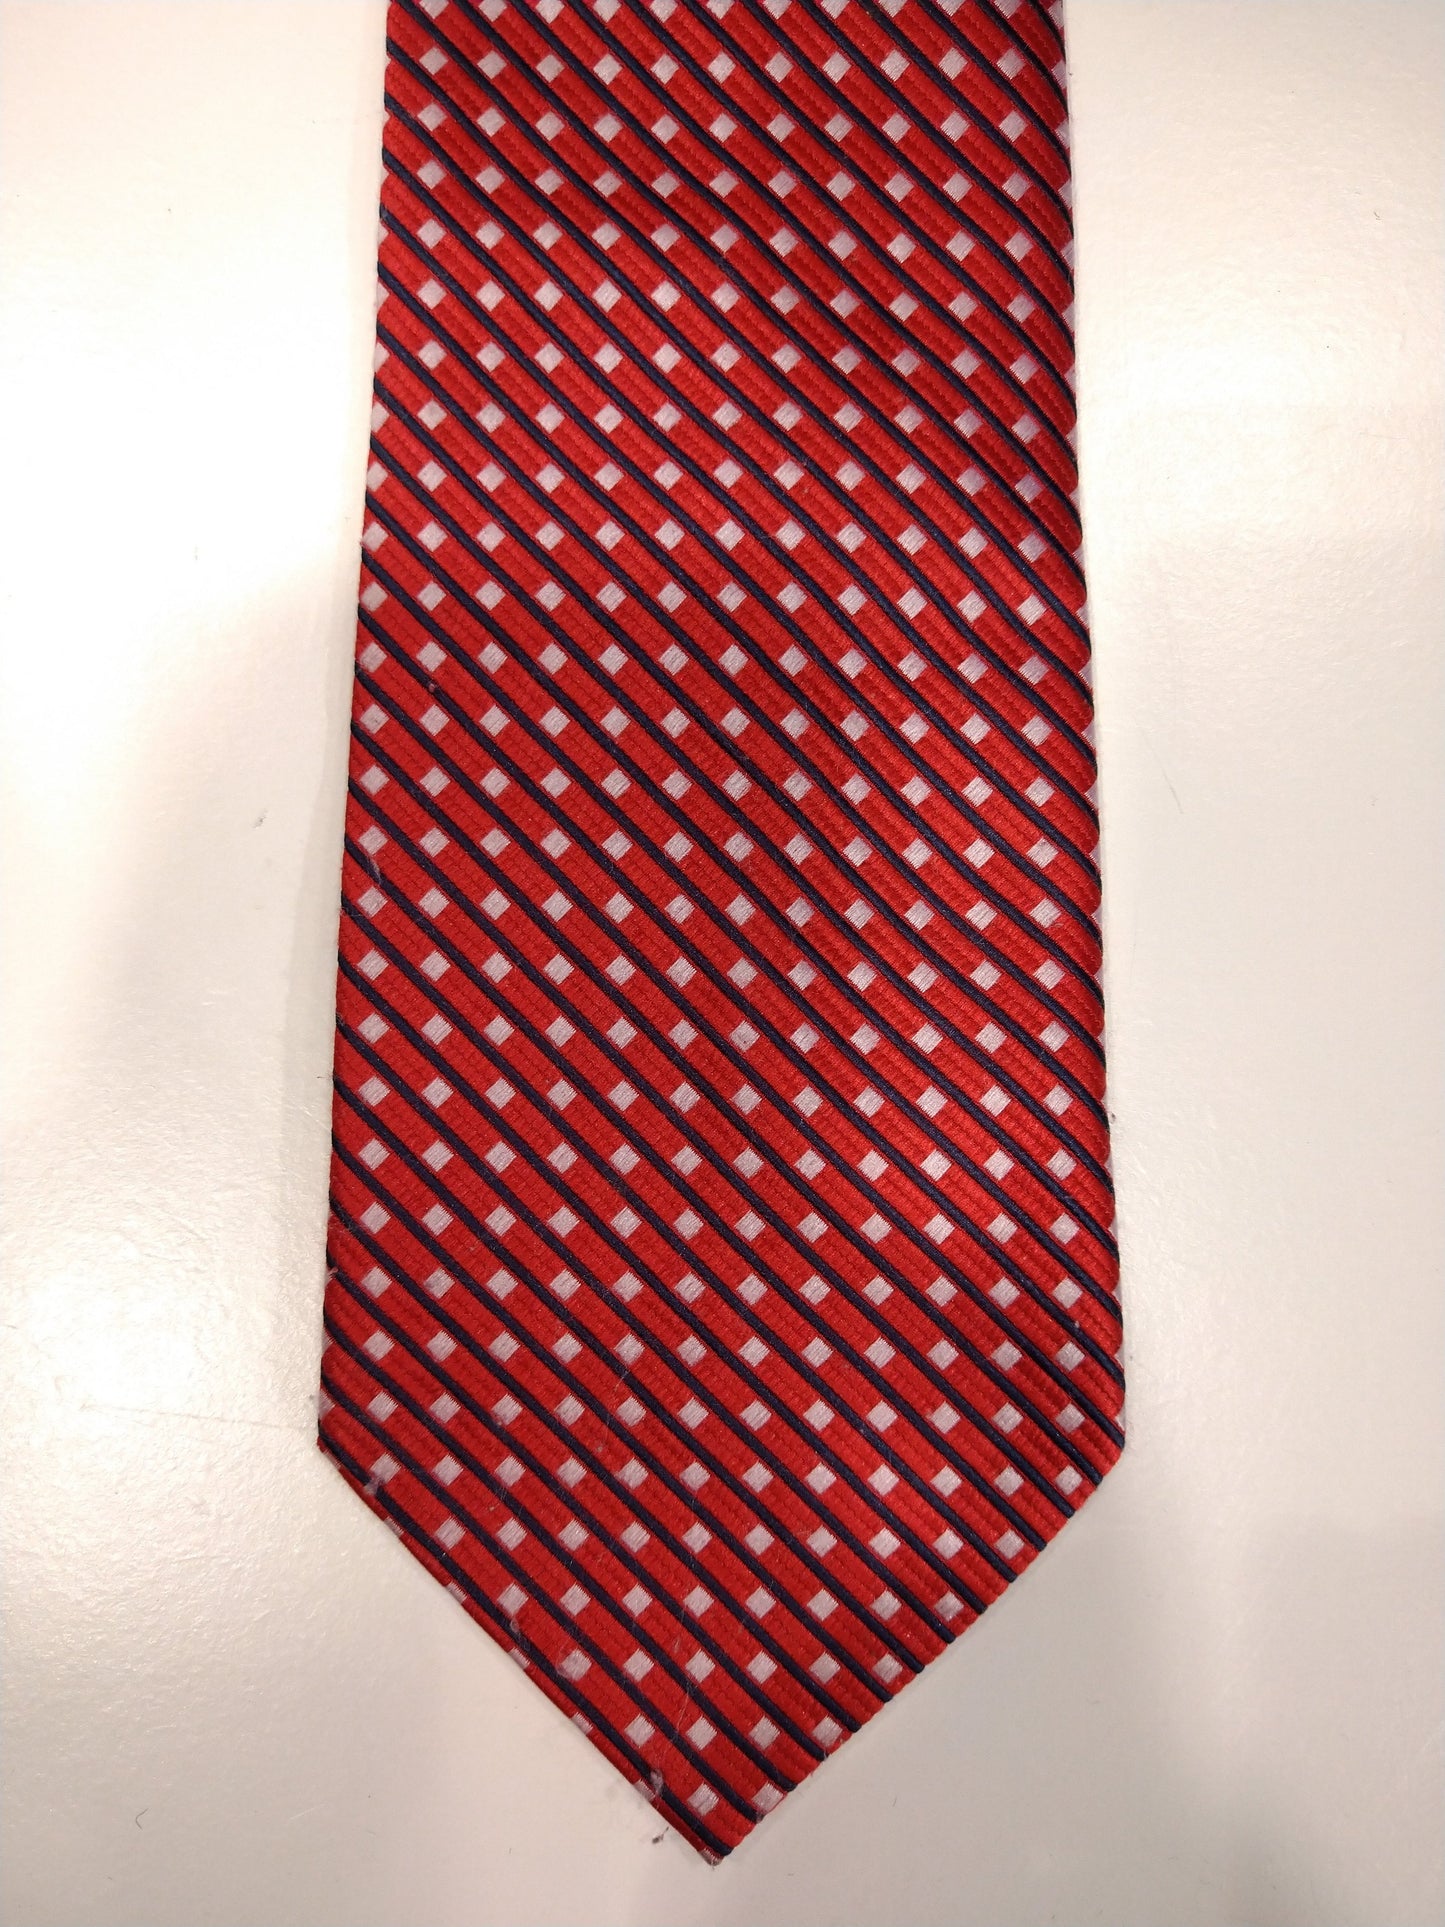 Vintage silk tie. Red with white balls motif.